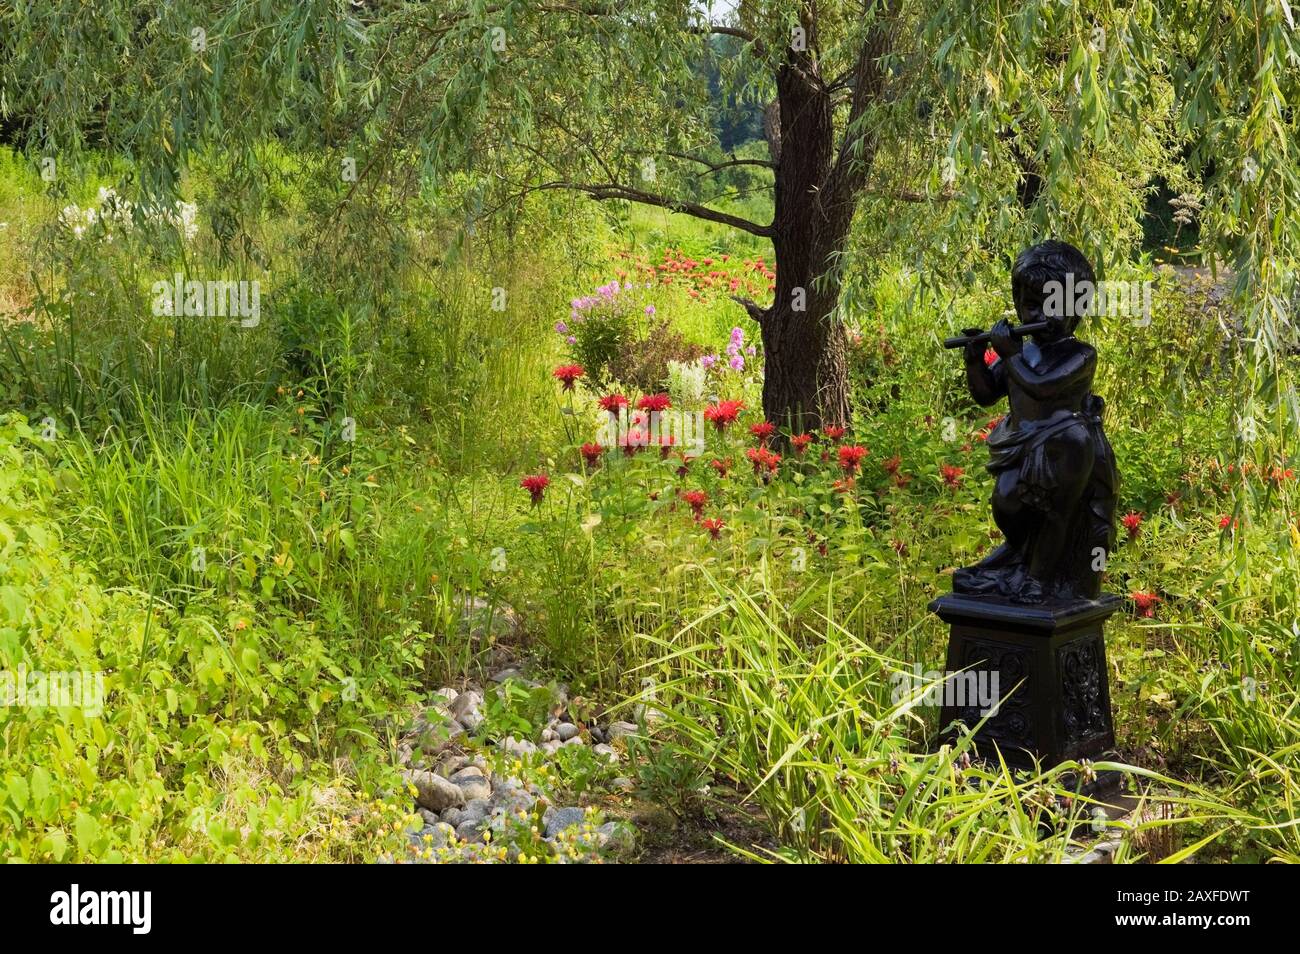 Schwarz bemalte Renaissance-Statue des Jungen spielt eine Flöte Unter einer Salix alba 'tristis' - Wilow Baum untergepflanzt mit Rote Monarda Blumen Stockfoto